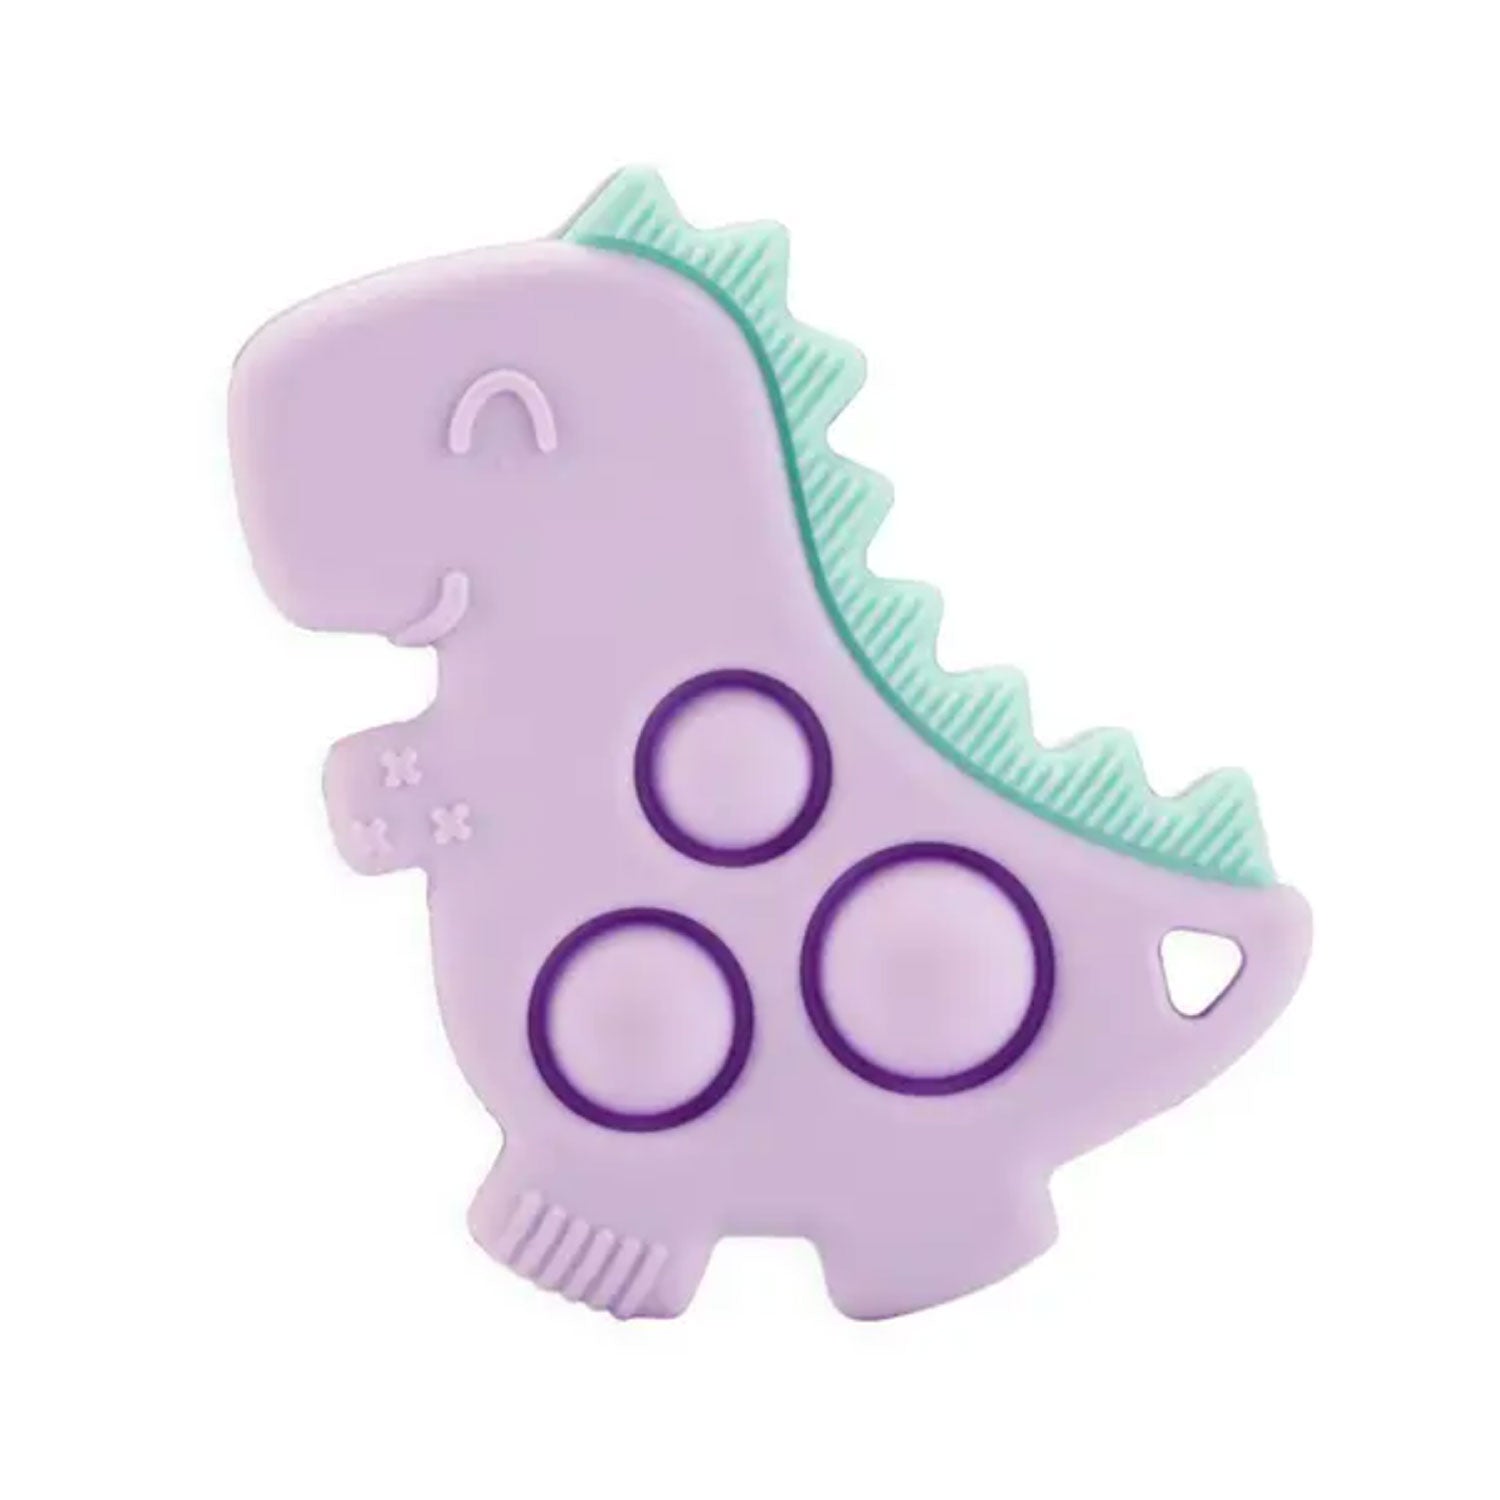 Itzy Ritzy Itzy Pop Sensory Popper Toy Teether - Lilac Dino